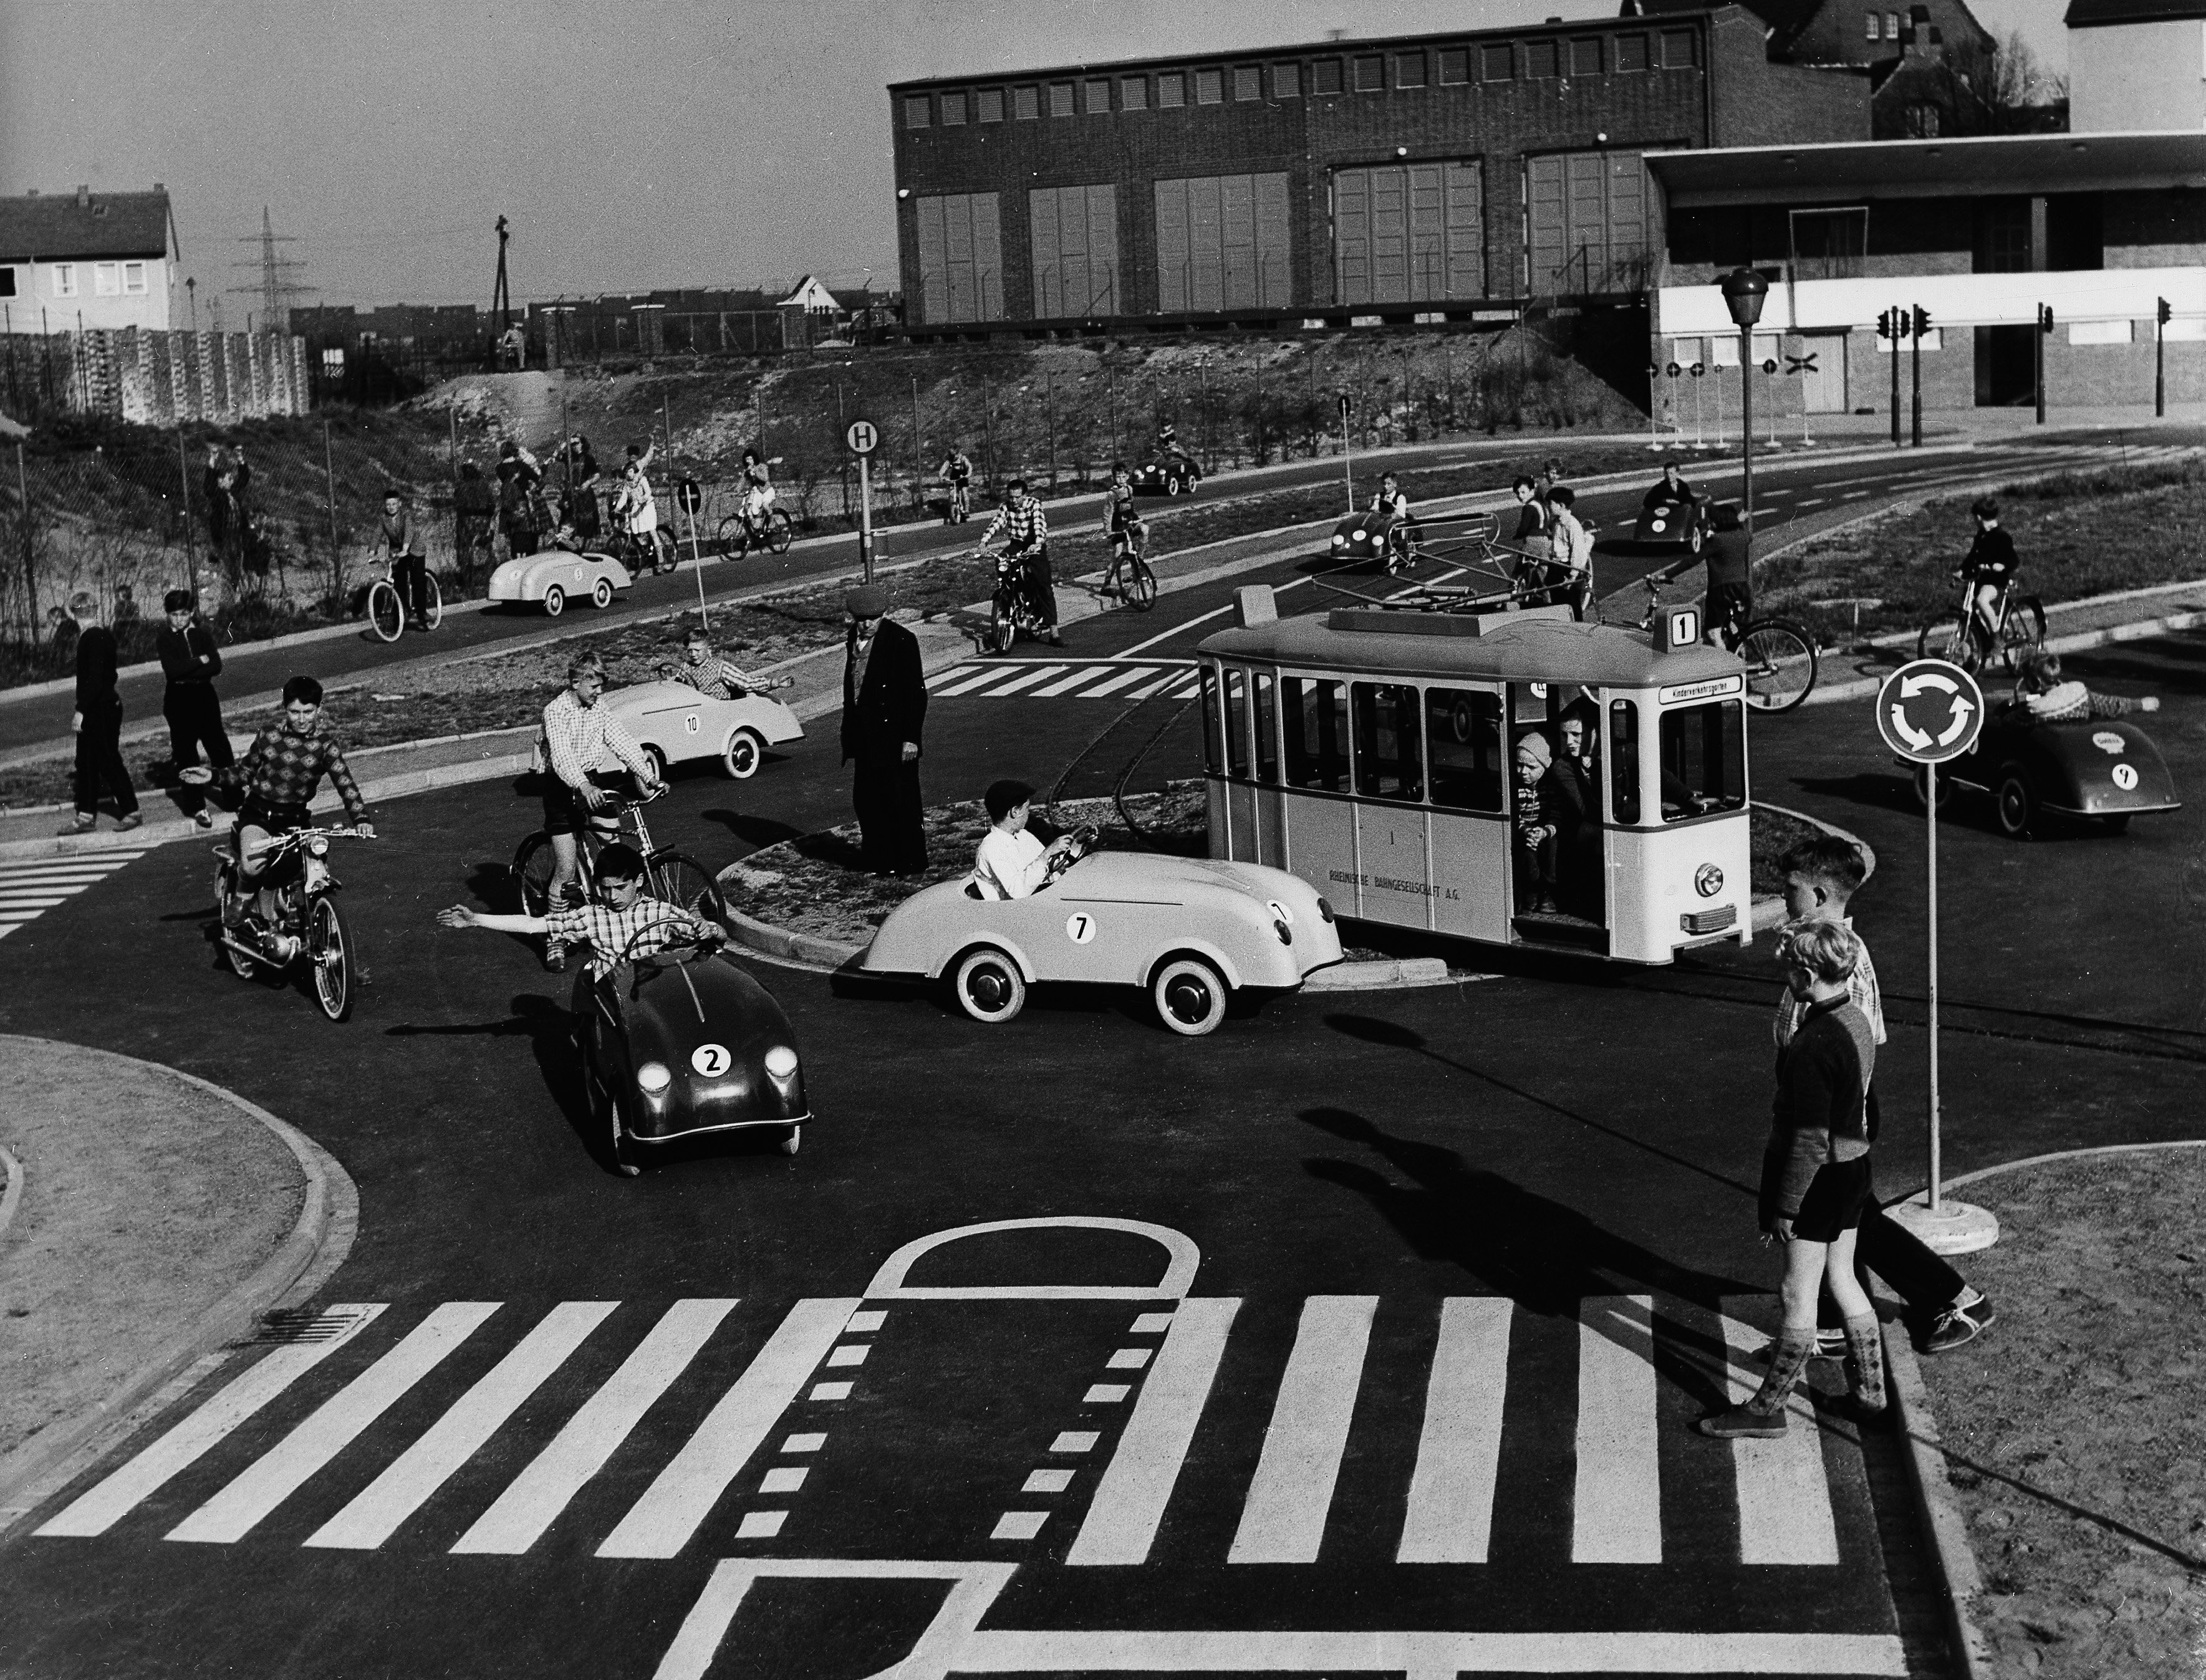 Schwarz-Weiß-Aufnahme, Kinder auf einem Verkehrsparcours in unterschiedlichen Fahrzeugen, im Vordergrund überqueren zwei Kinder einen Zebrastreifen.